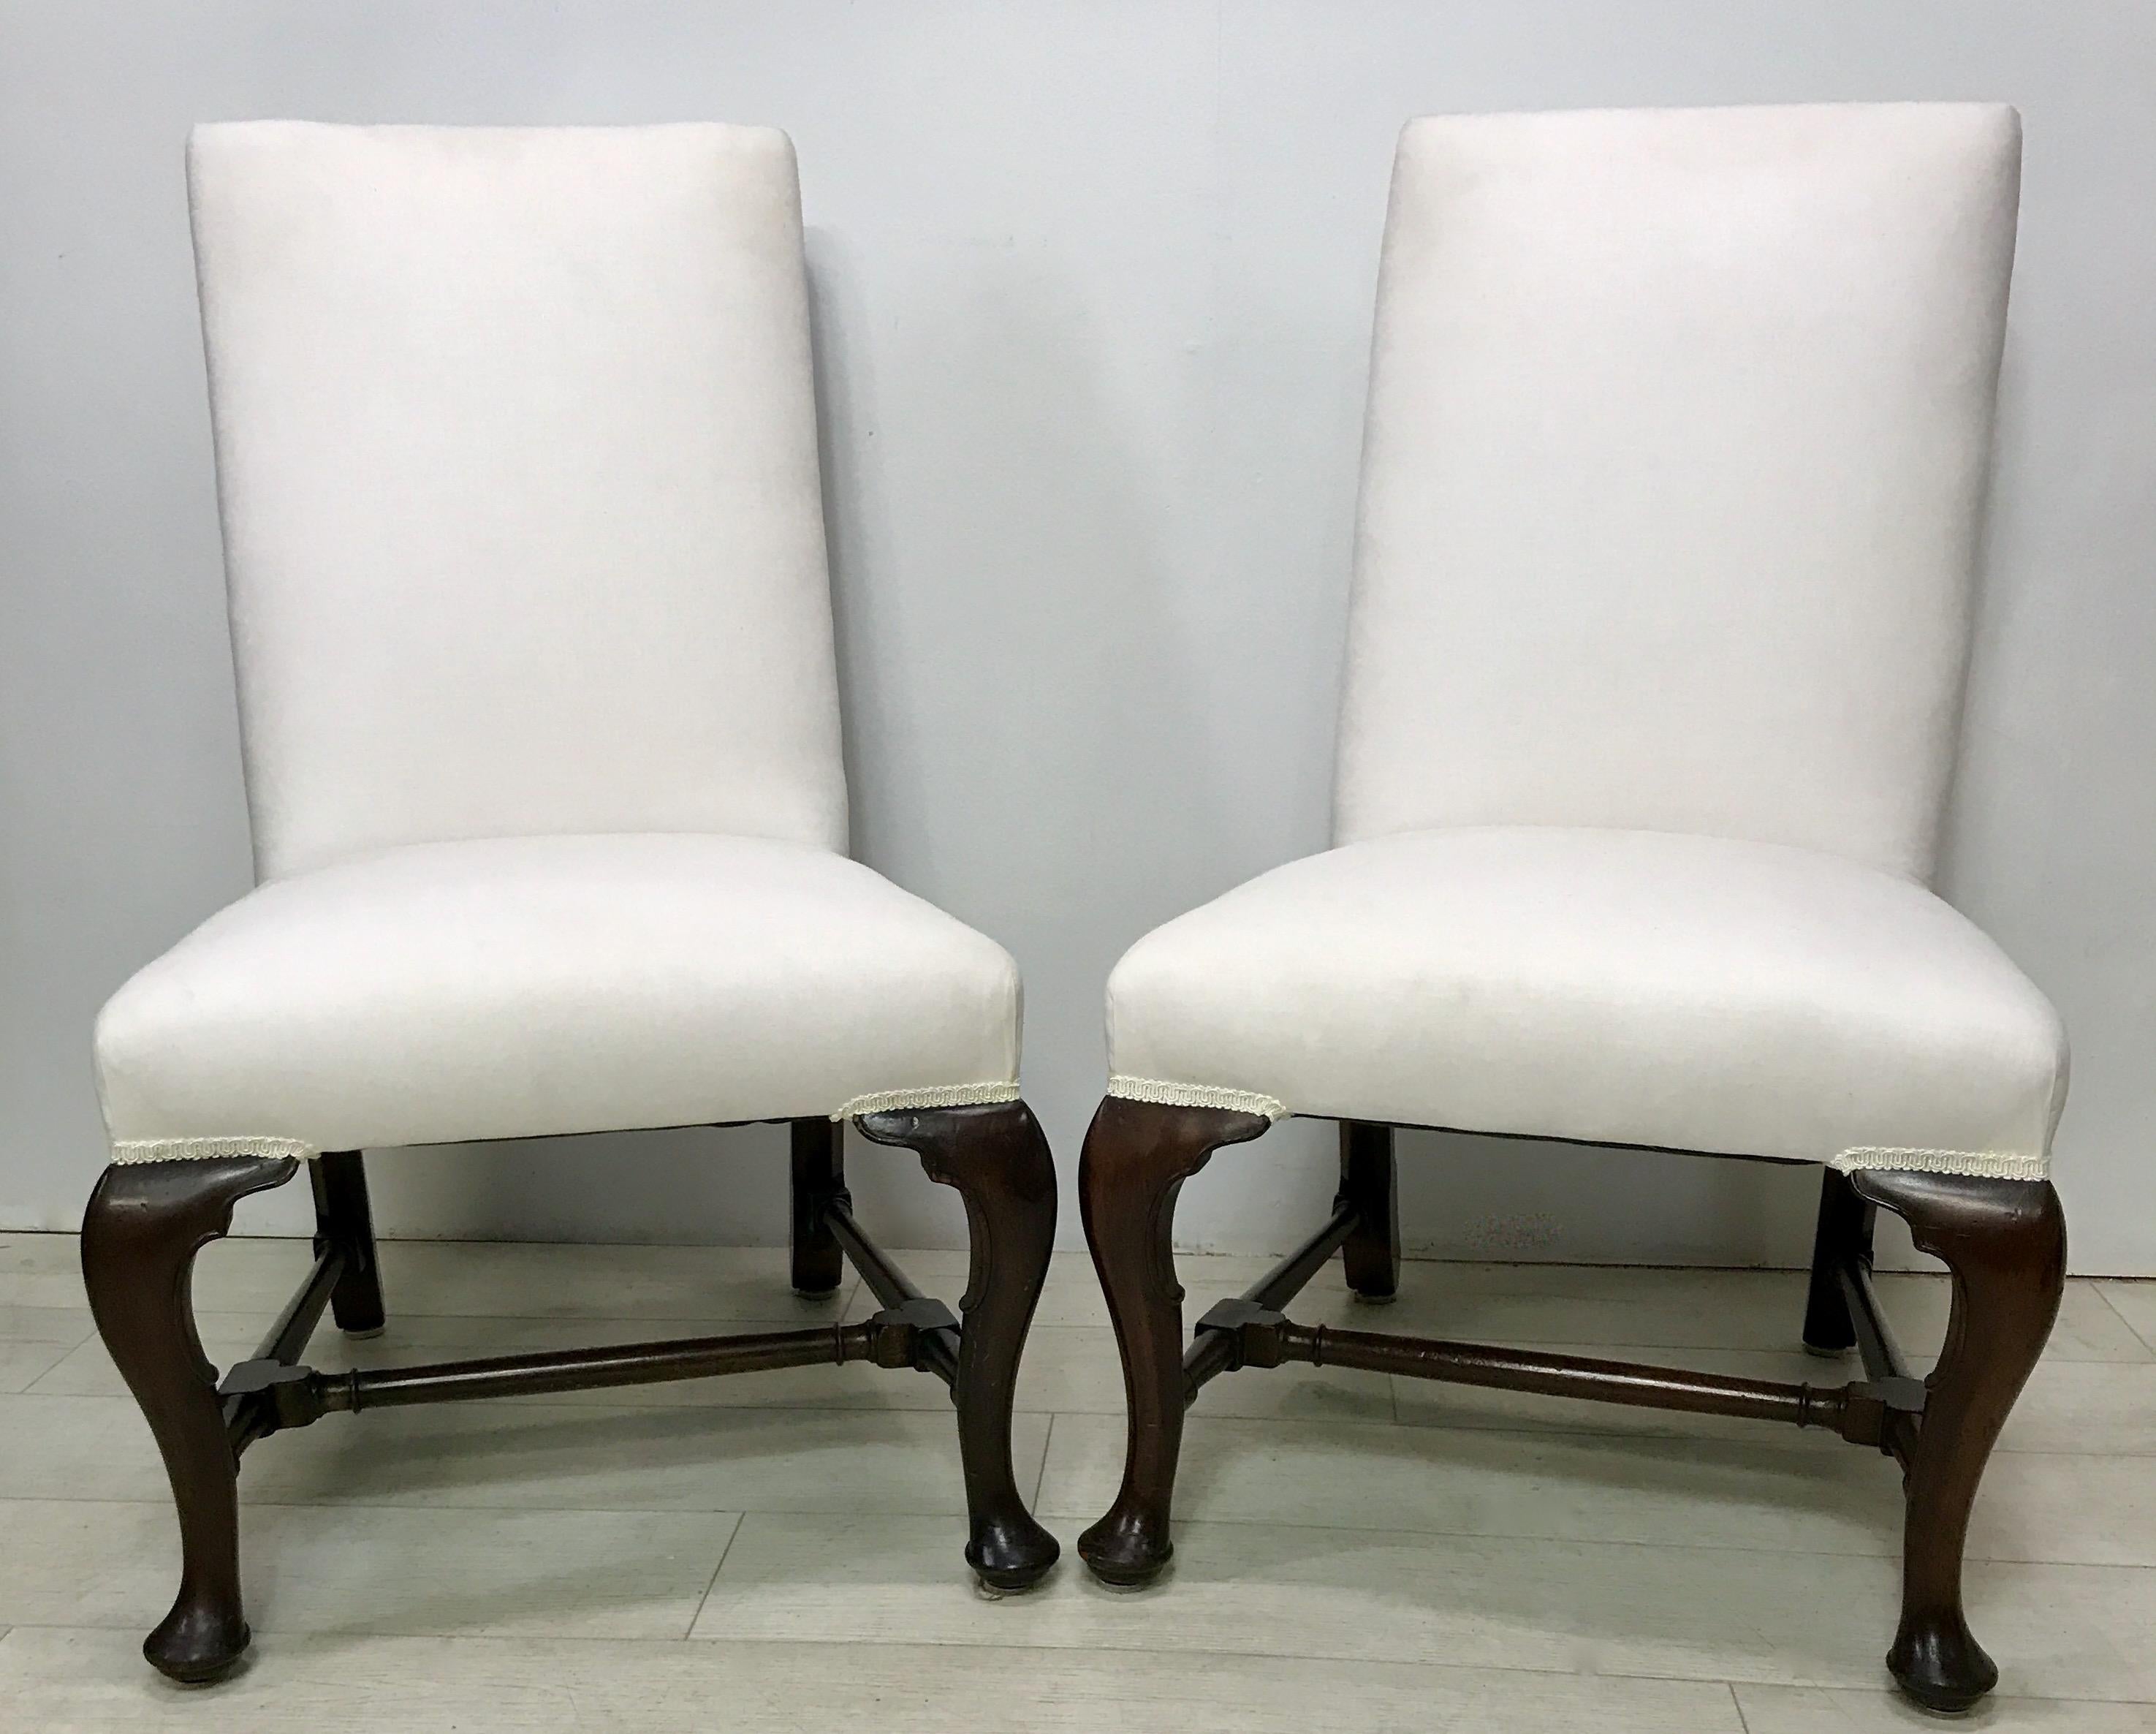 Une paire de chaises latérales de style Queen Anne en acajou, magnifiquement fabriquées à la main (banc), prêtes à être tapissées.
Ces chaises sont en excellent état, robustes et saines.
Fabriqué au début du 20e siècle